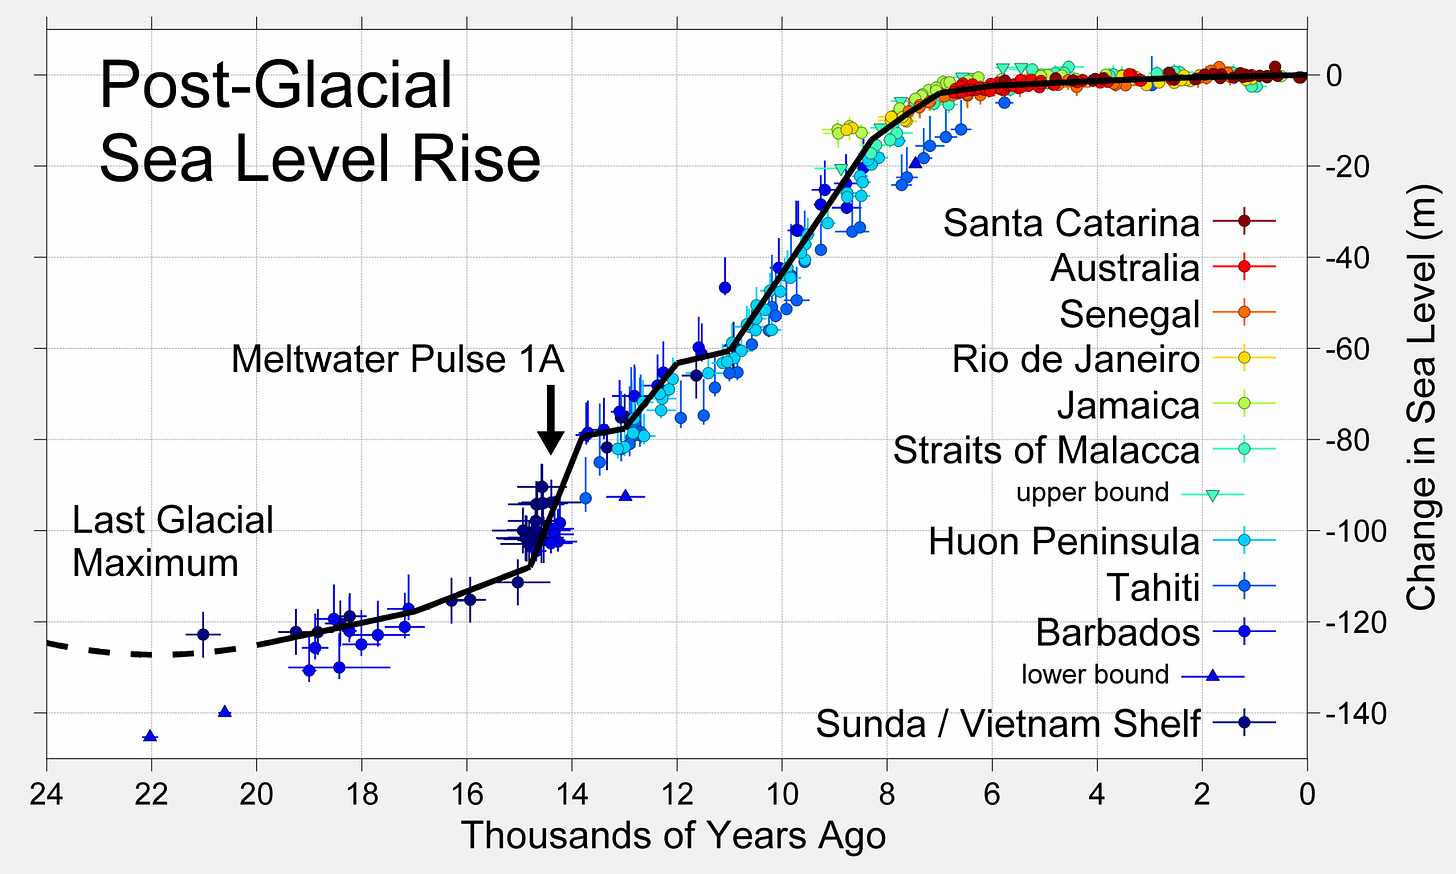 Figure 10 - Post Glacial Sea Level Rise